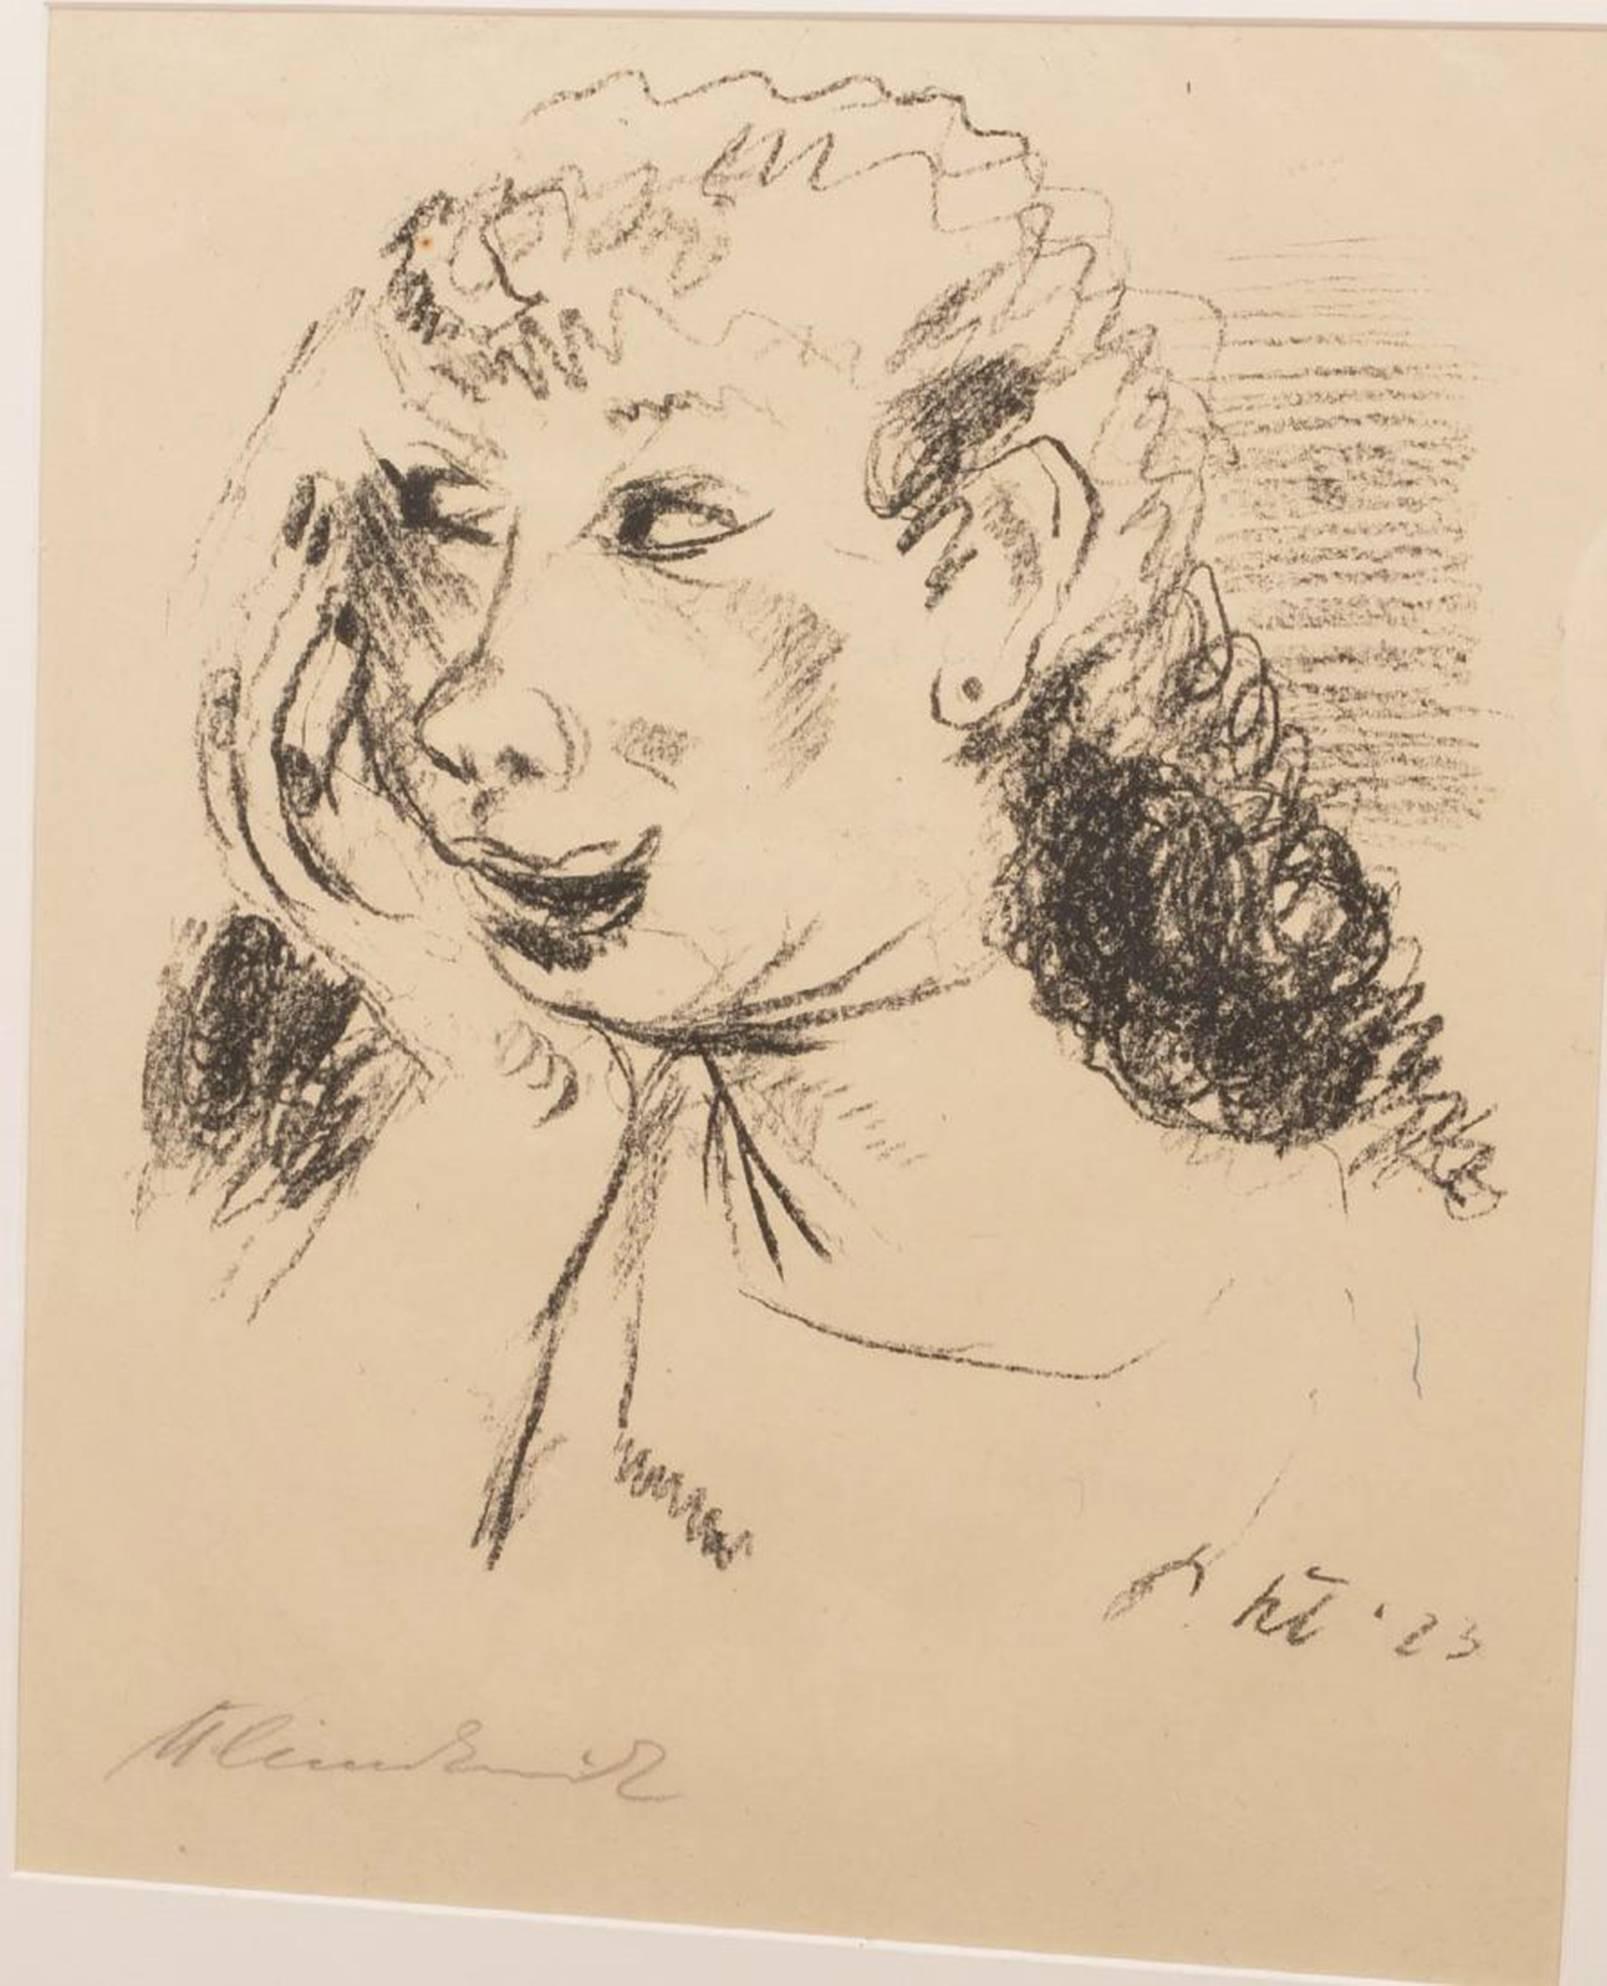 Artistics : Paul Kleinschmidt (allemand, 1883-1949)
Titre : Sans titre
Date : 1923
Médium : Lithographie sur papier
Signé au crayon
Dimensions : 16,5 